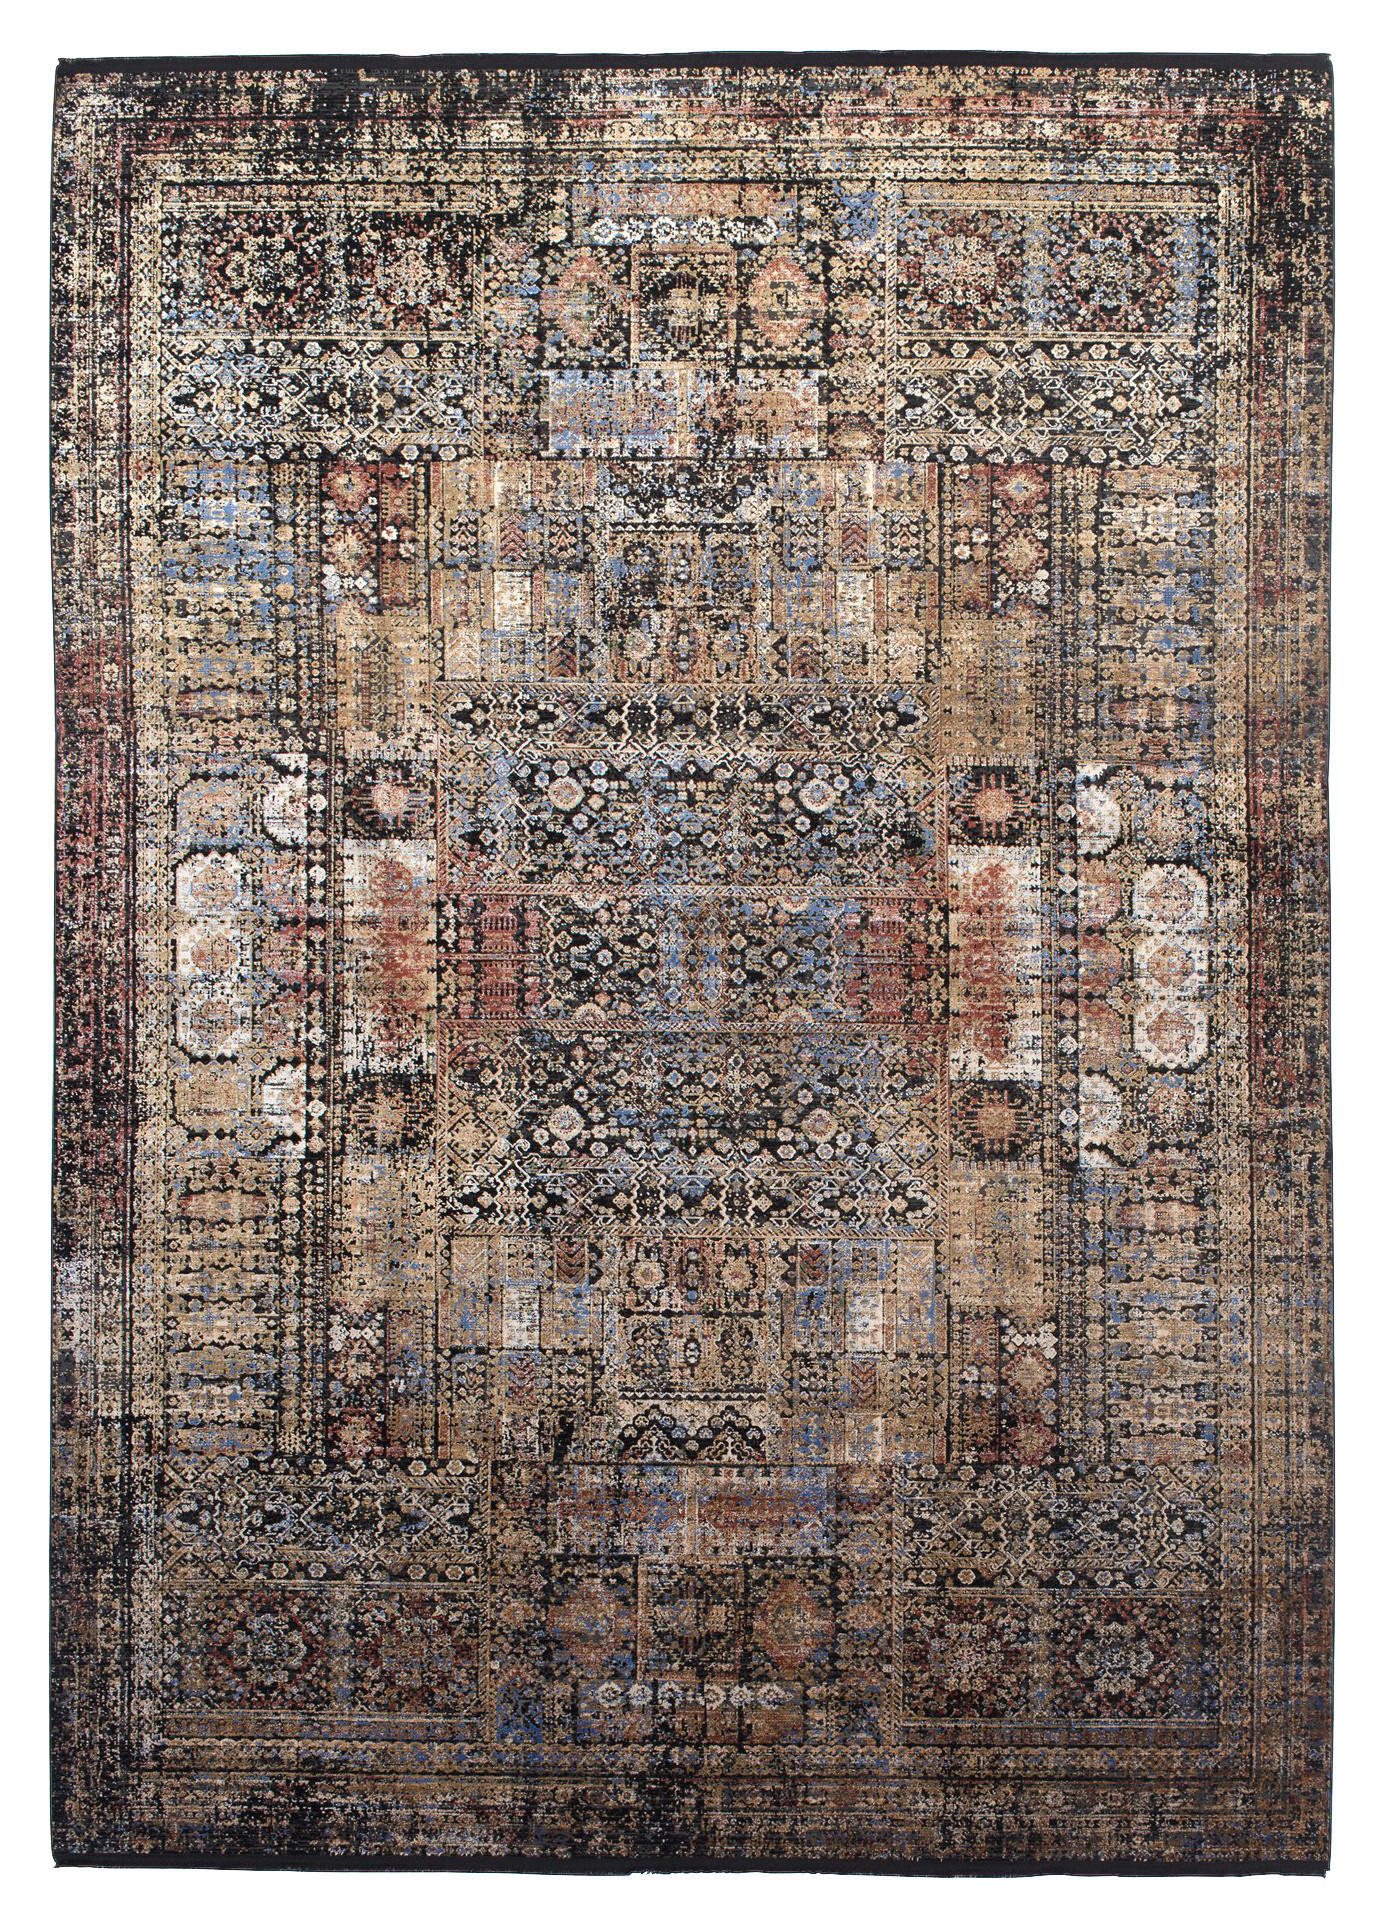 WEBTEPPICH 120/180 cm Bordeaux  - Multicolor, Design, Textil (120/180cm) - Dieter Knoll